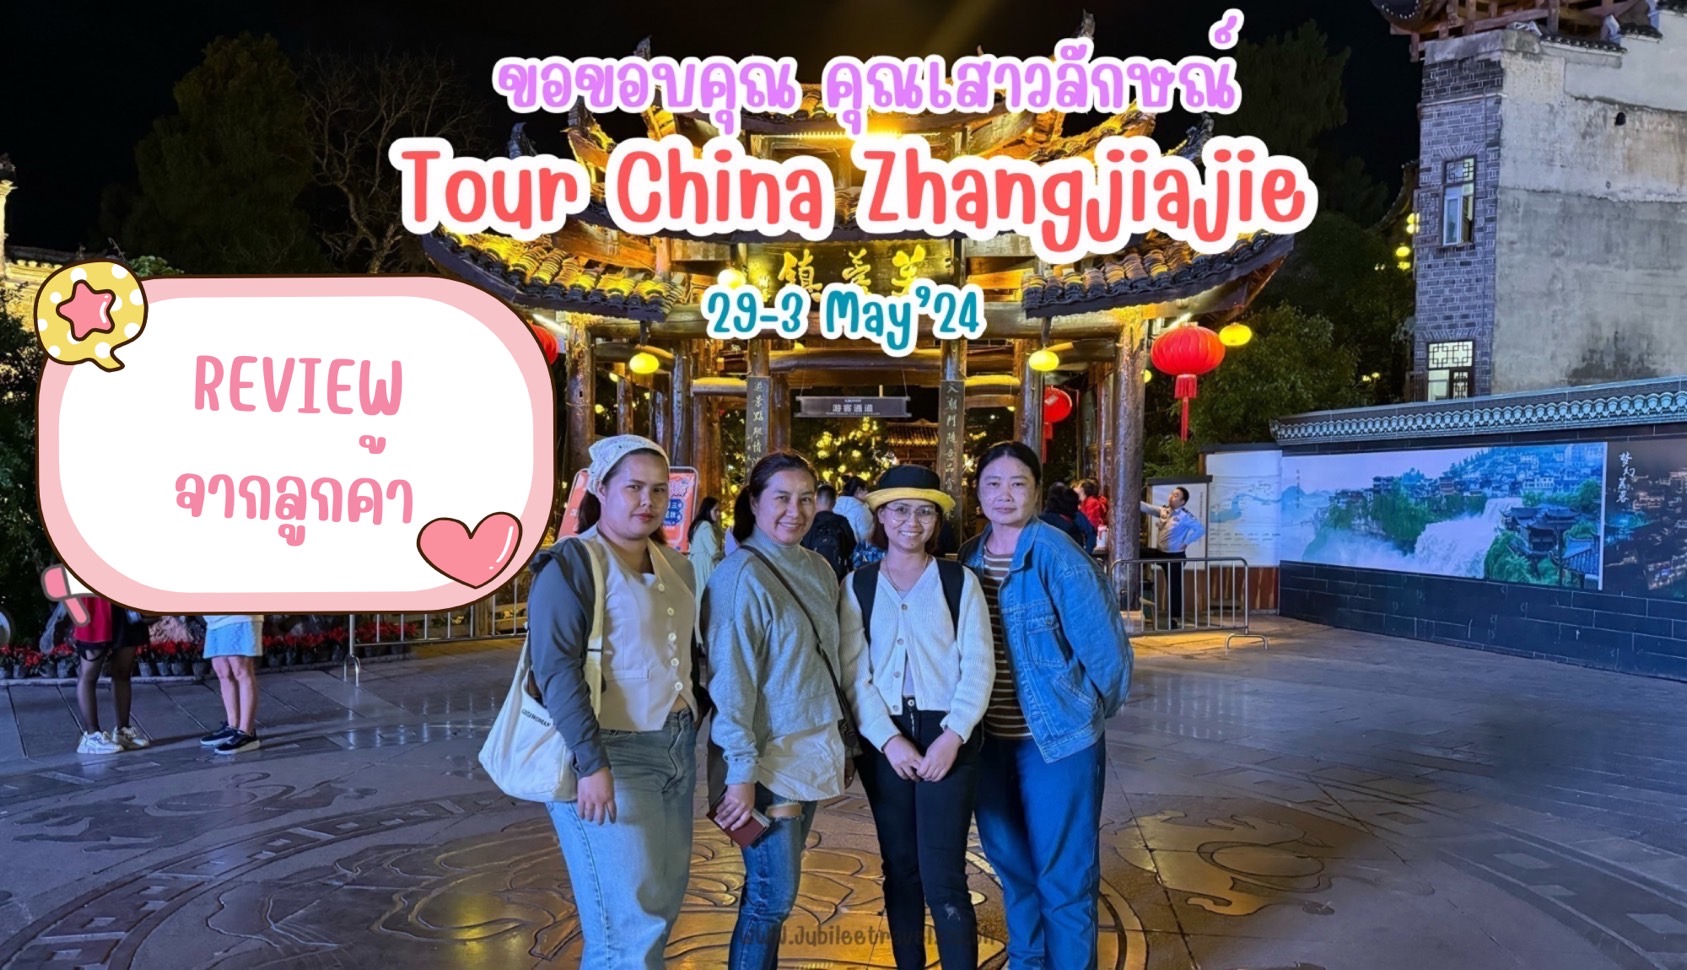 รีวิวจากลูกค้า : คุณเสาวลักษณ์ Tour China Zhangjiajie 29 – 3 May’24